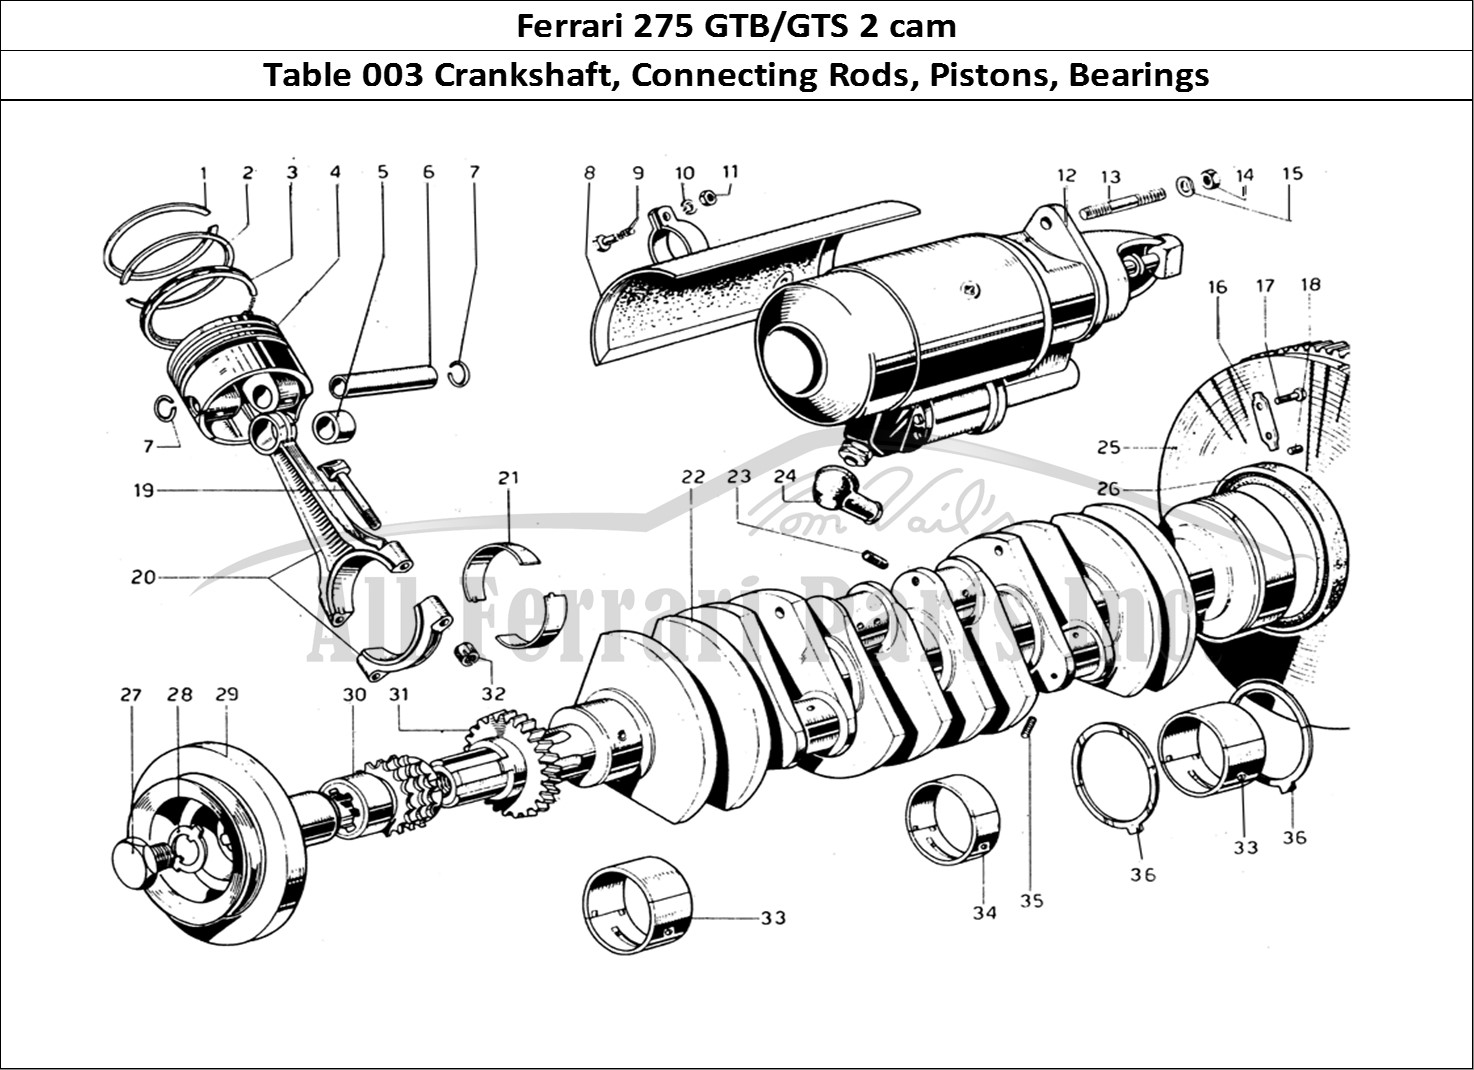 Ferrari Parts Ferrari 275 GTB/GTS 2 cam Page 003 Crankshaft, Con rods & pi